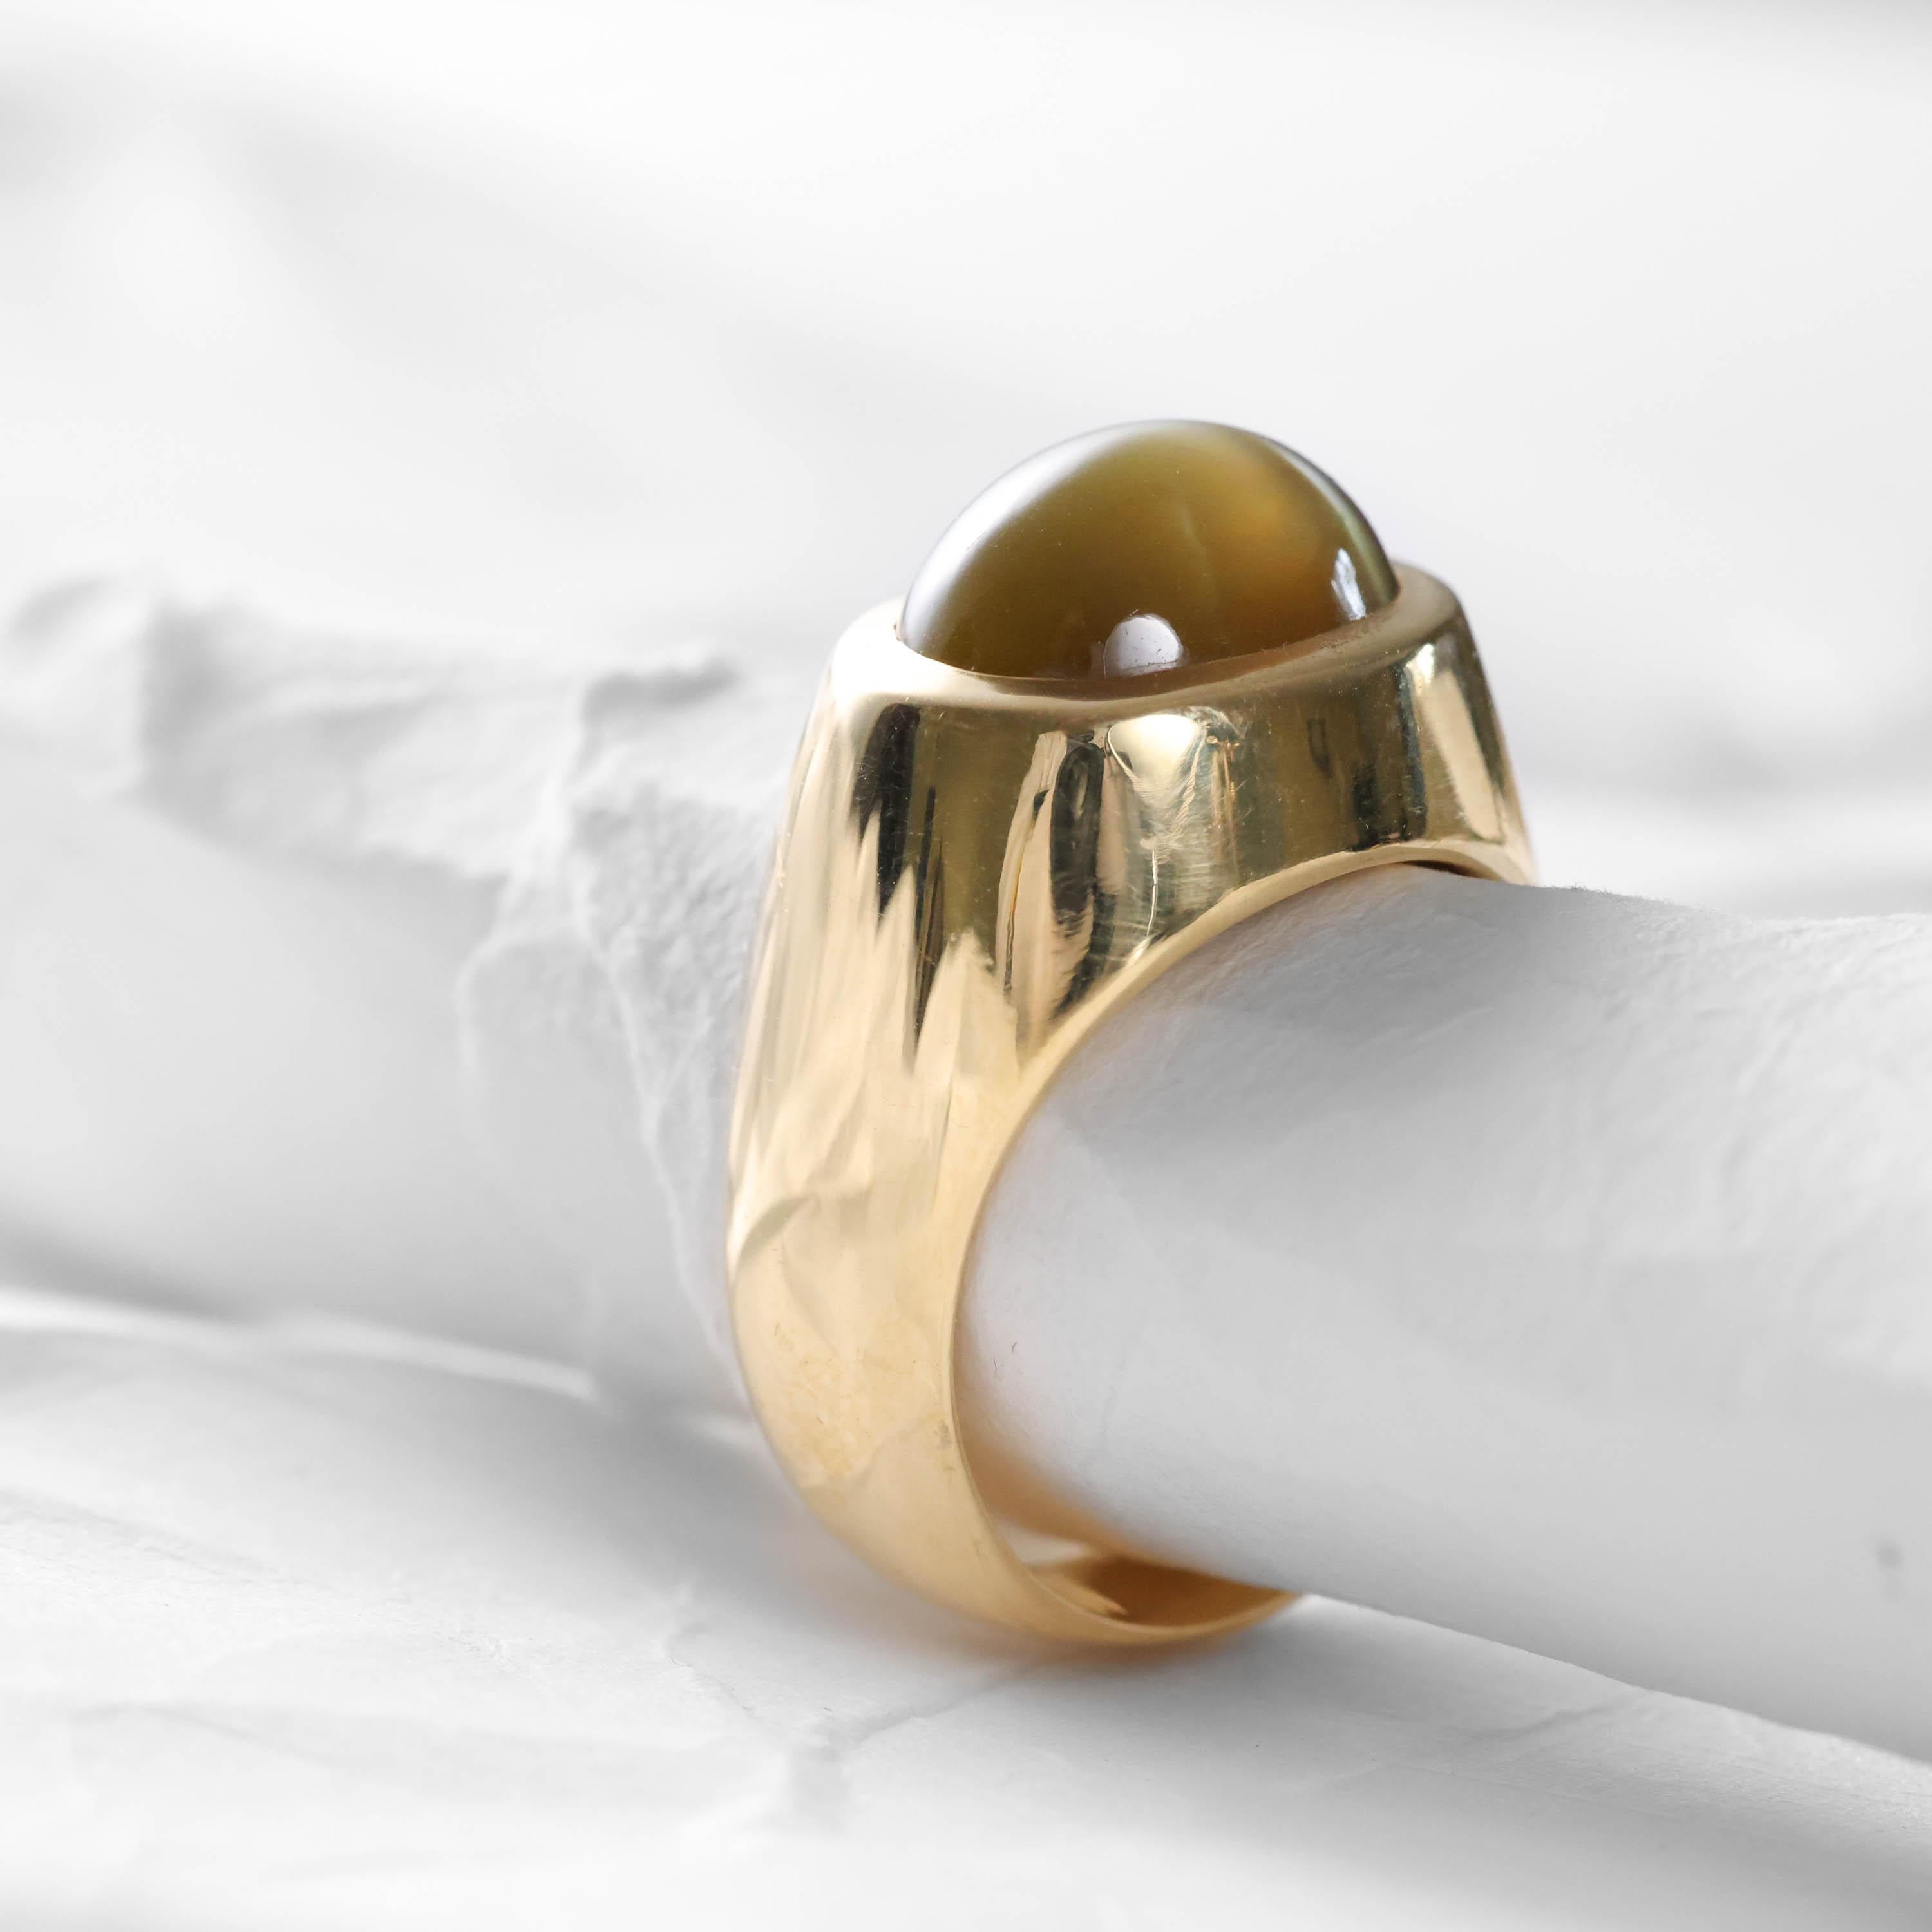 Women's or Men's Chrysoberyl Cat's Eye Ring 12.5 Carats Milk & Honey Certified Men's Ring For Sale